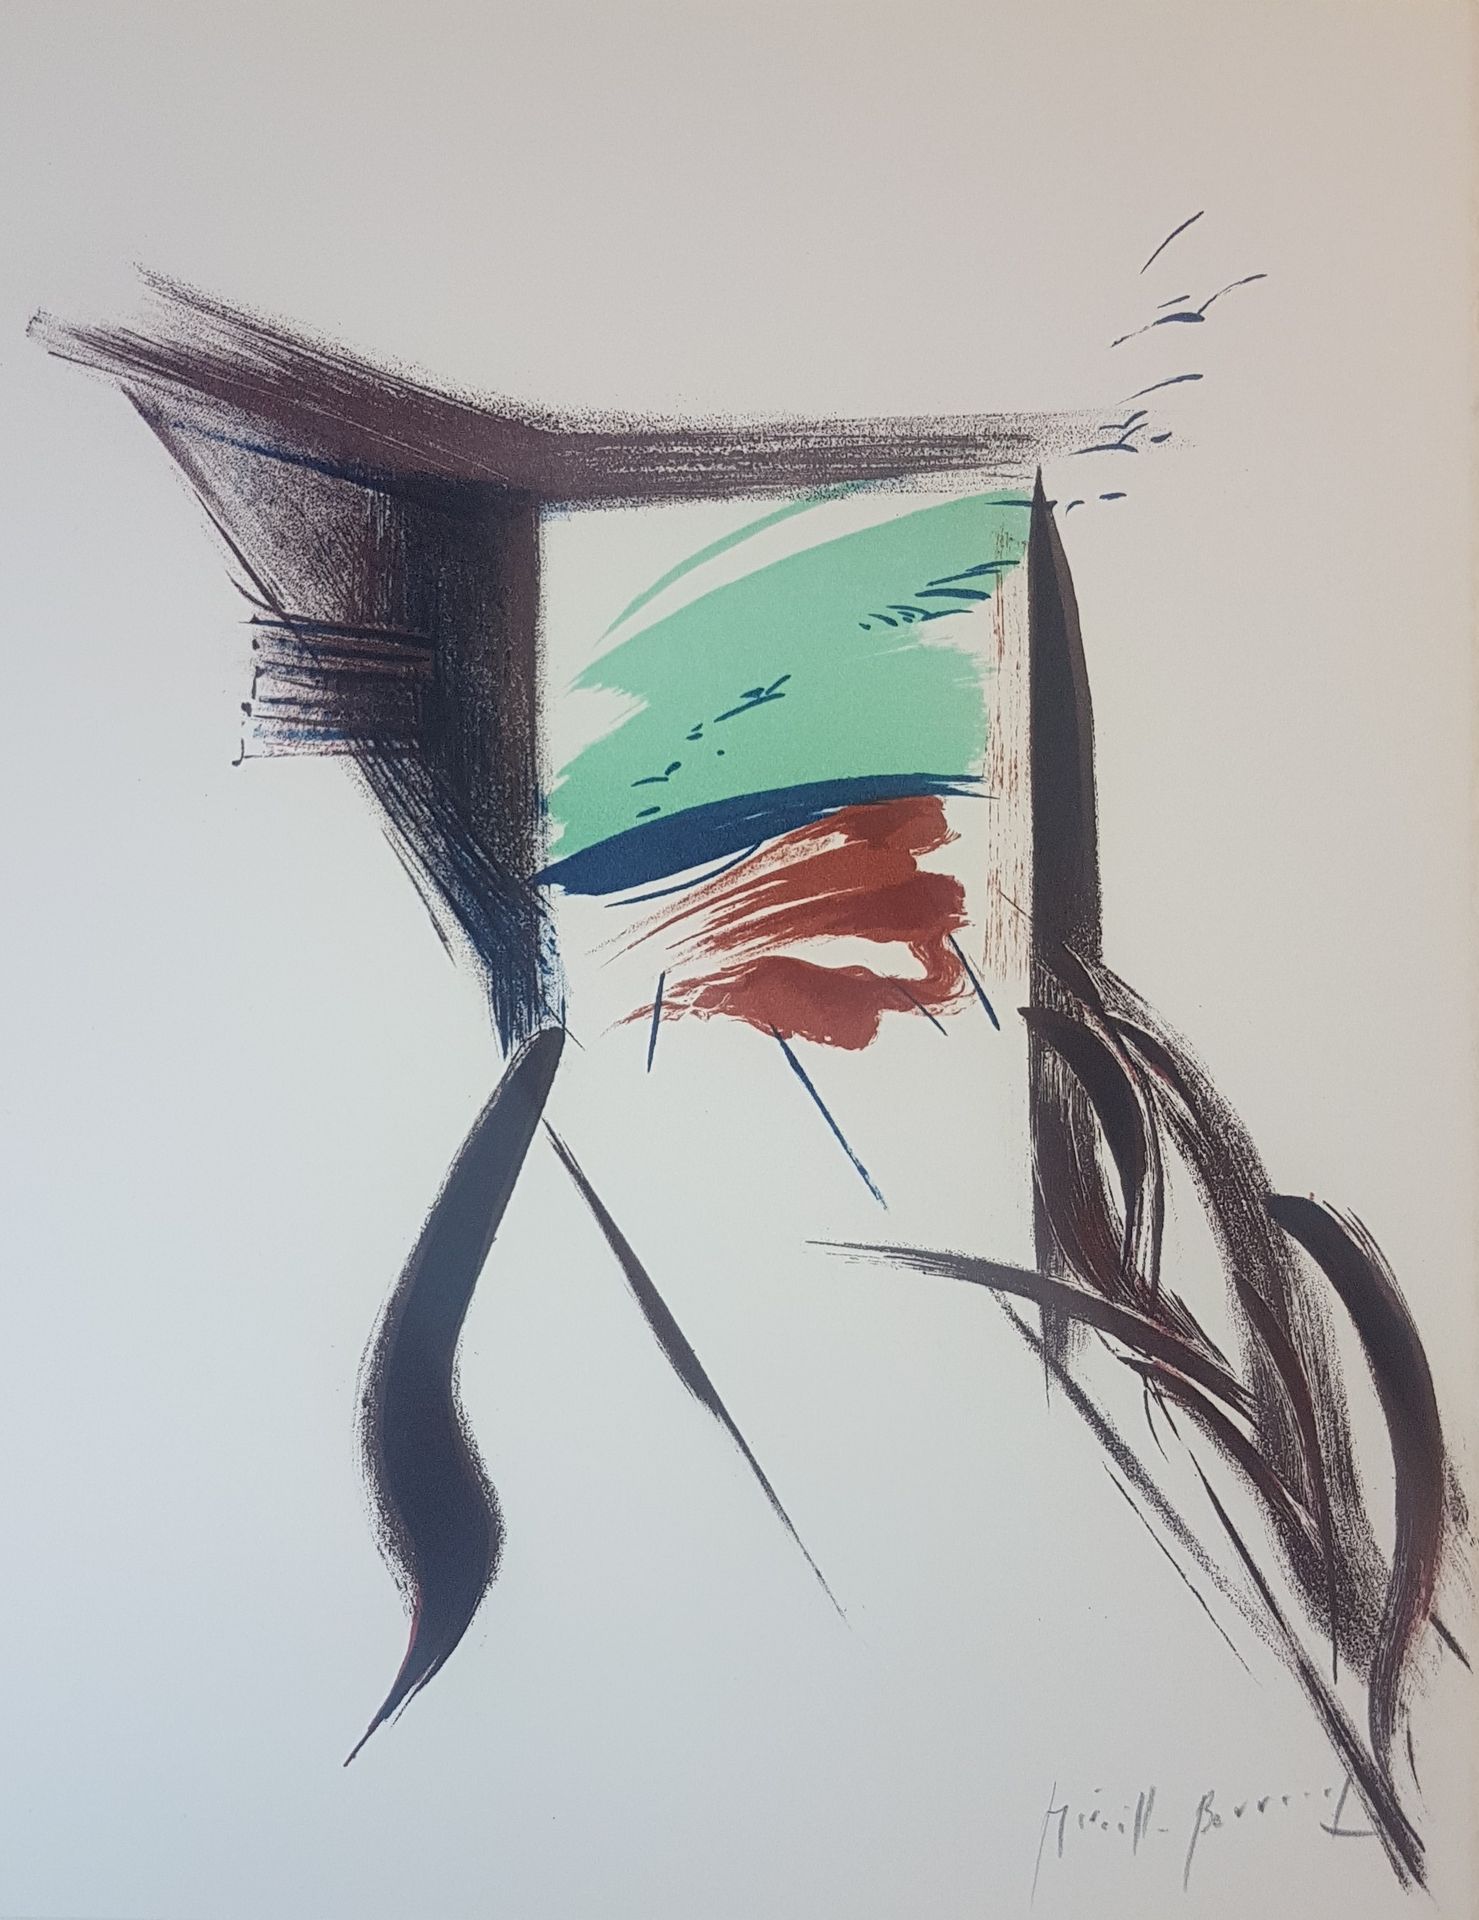 Mireille BERRARD 米雷尔-贝拉尔 ( 1930-2005 )

陌生人》，1976年

克莱尔艺术版

用铅笔签名的原始石版画

Vélin d&hellip;